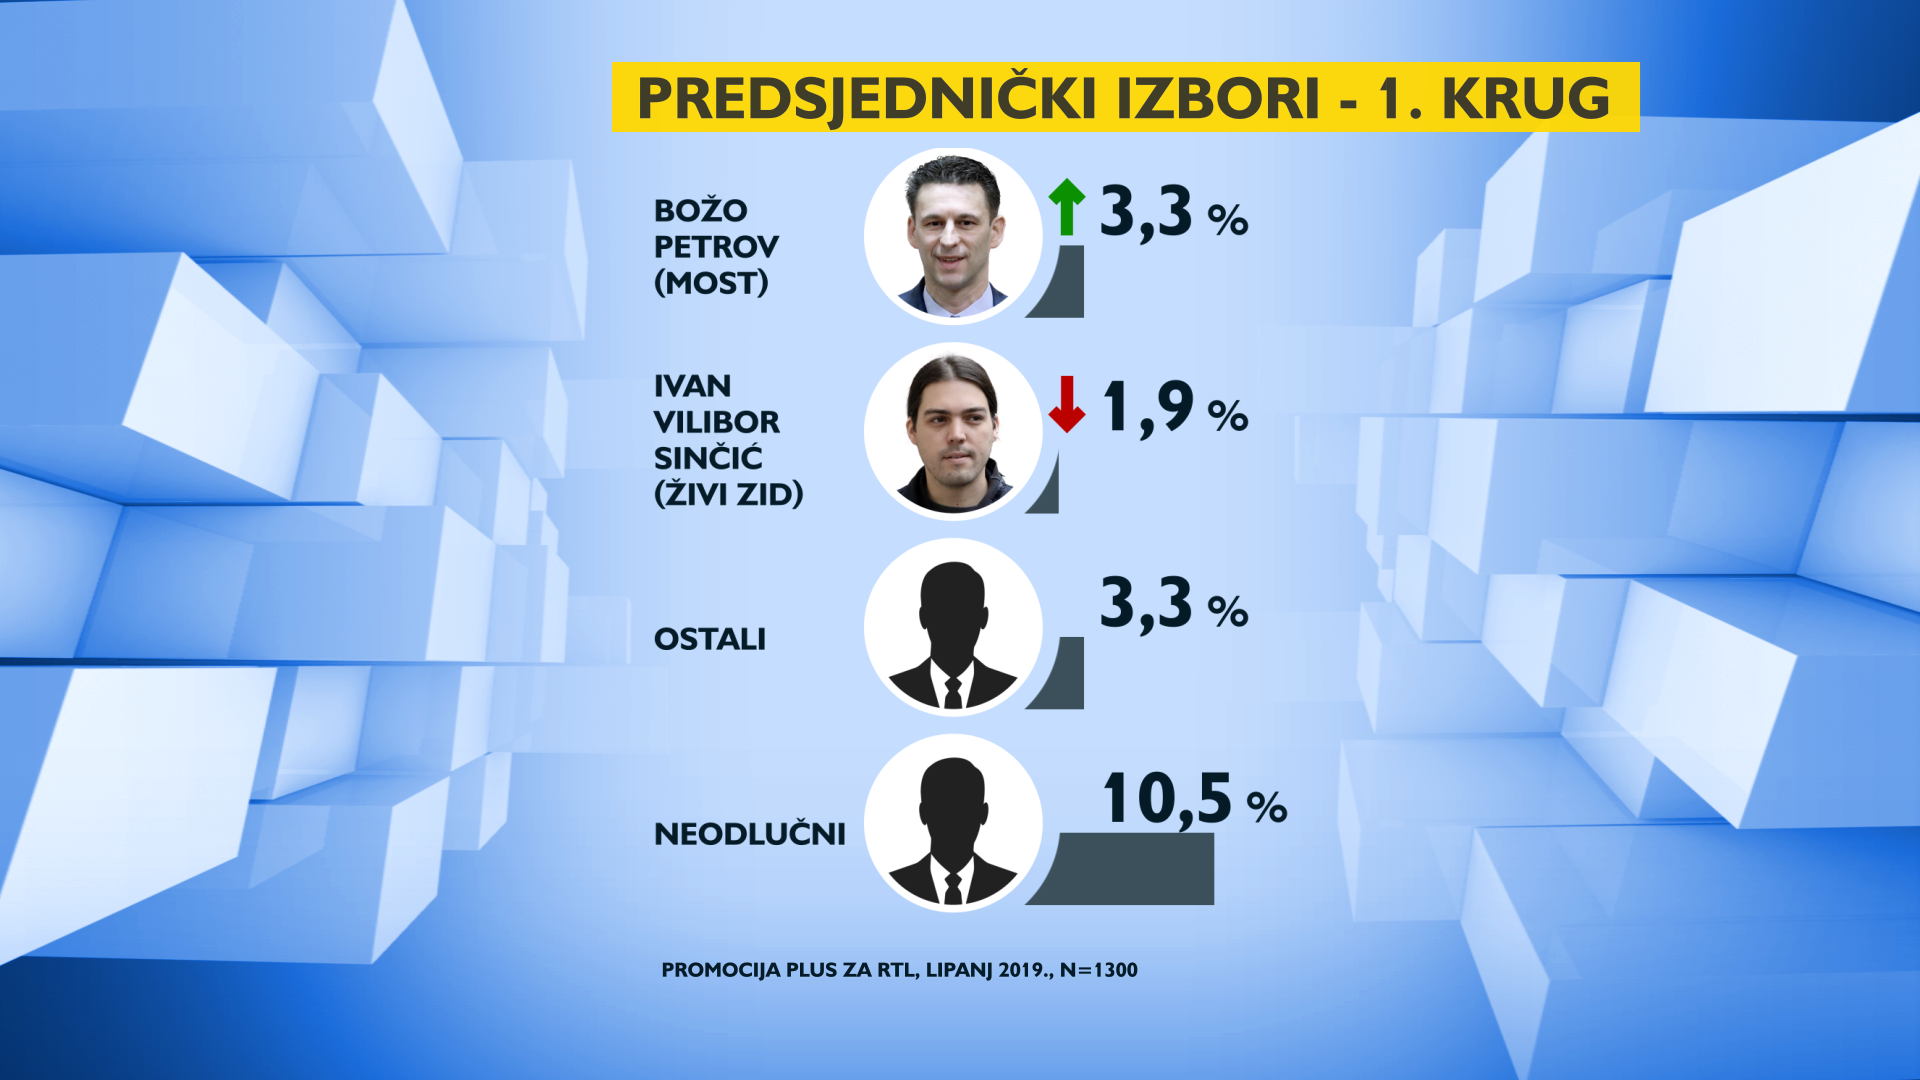 Kolindi potpora pada, Milanović raste, Škorin rejting  je 13,8%